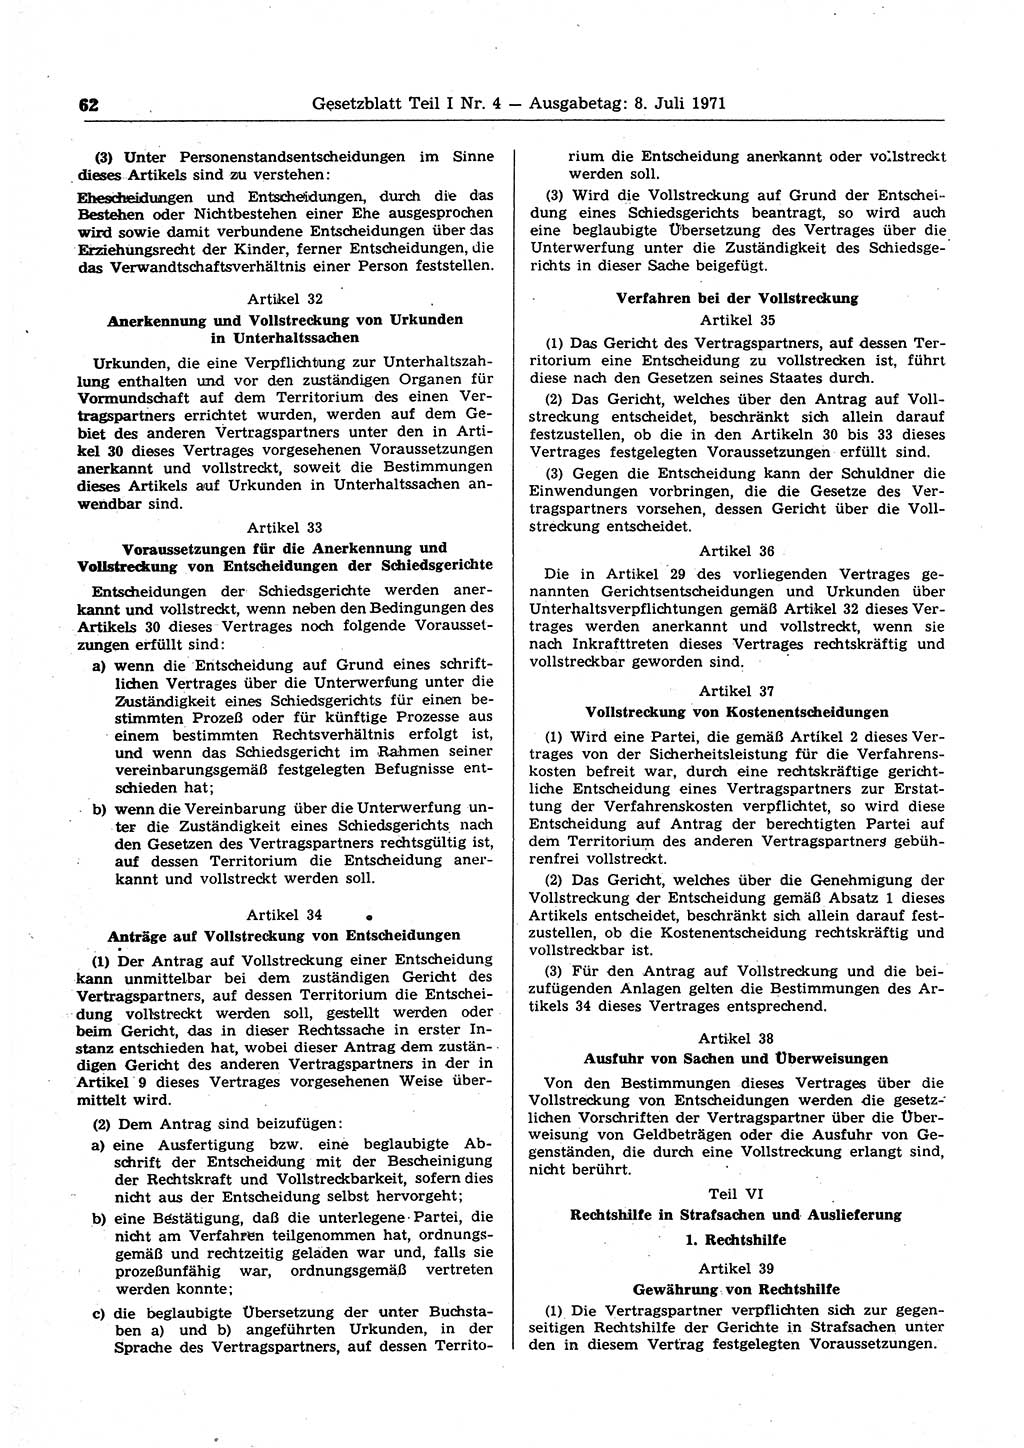 Gesetzblatt (GBl.) der Deutschen Demokratischen Republik (DDR) Teil Ⅰ 1971, Seite 62 (GBl. DDR Ⅰ 1971, S. 62)